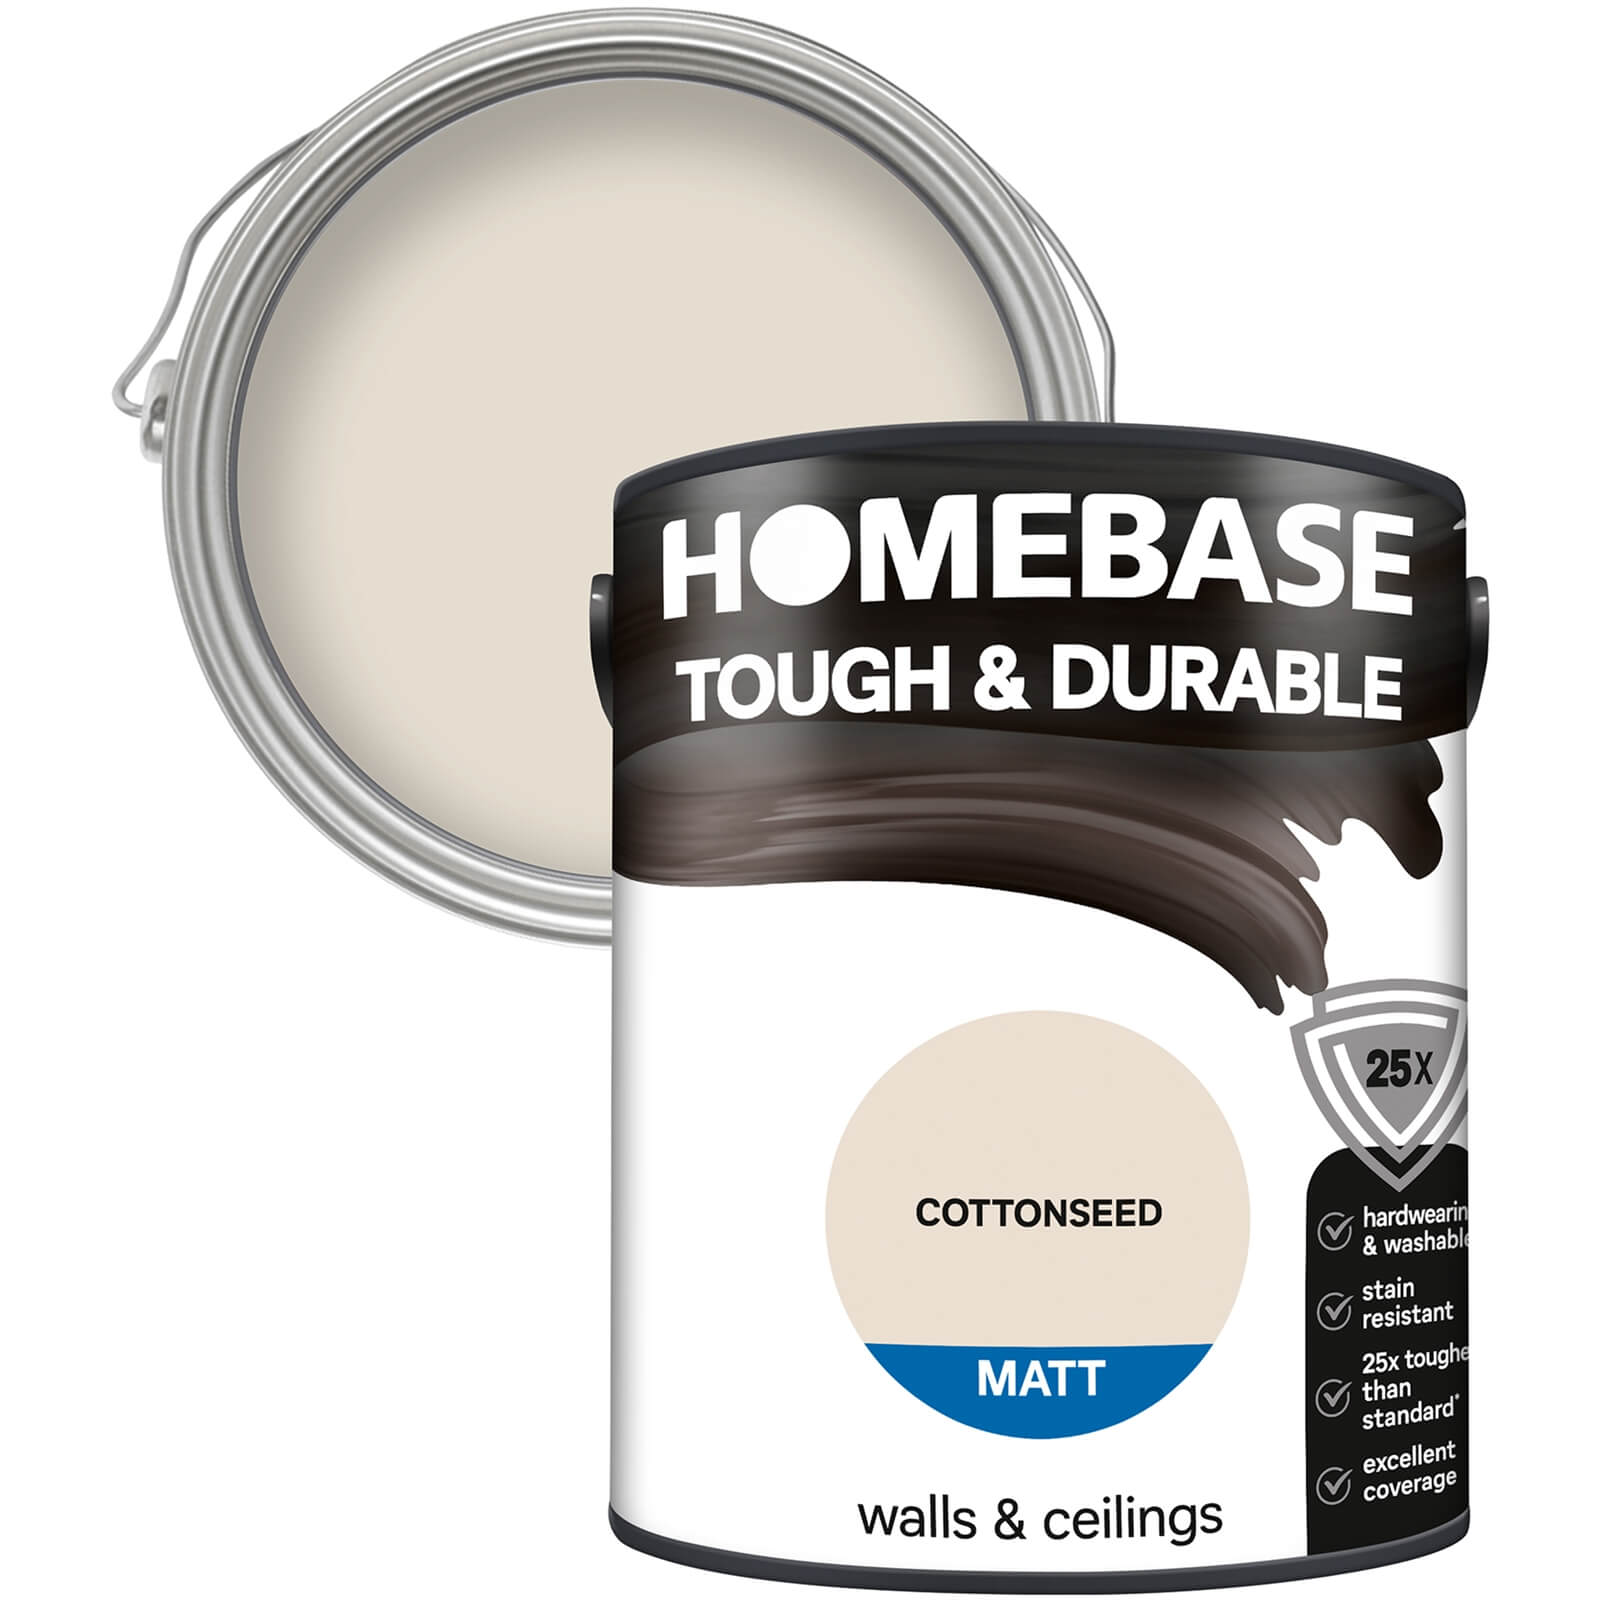 Homebase Tough & Durable Matt Paint Cottonseed - 5L